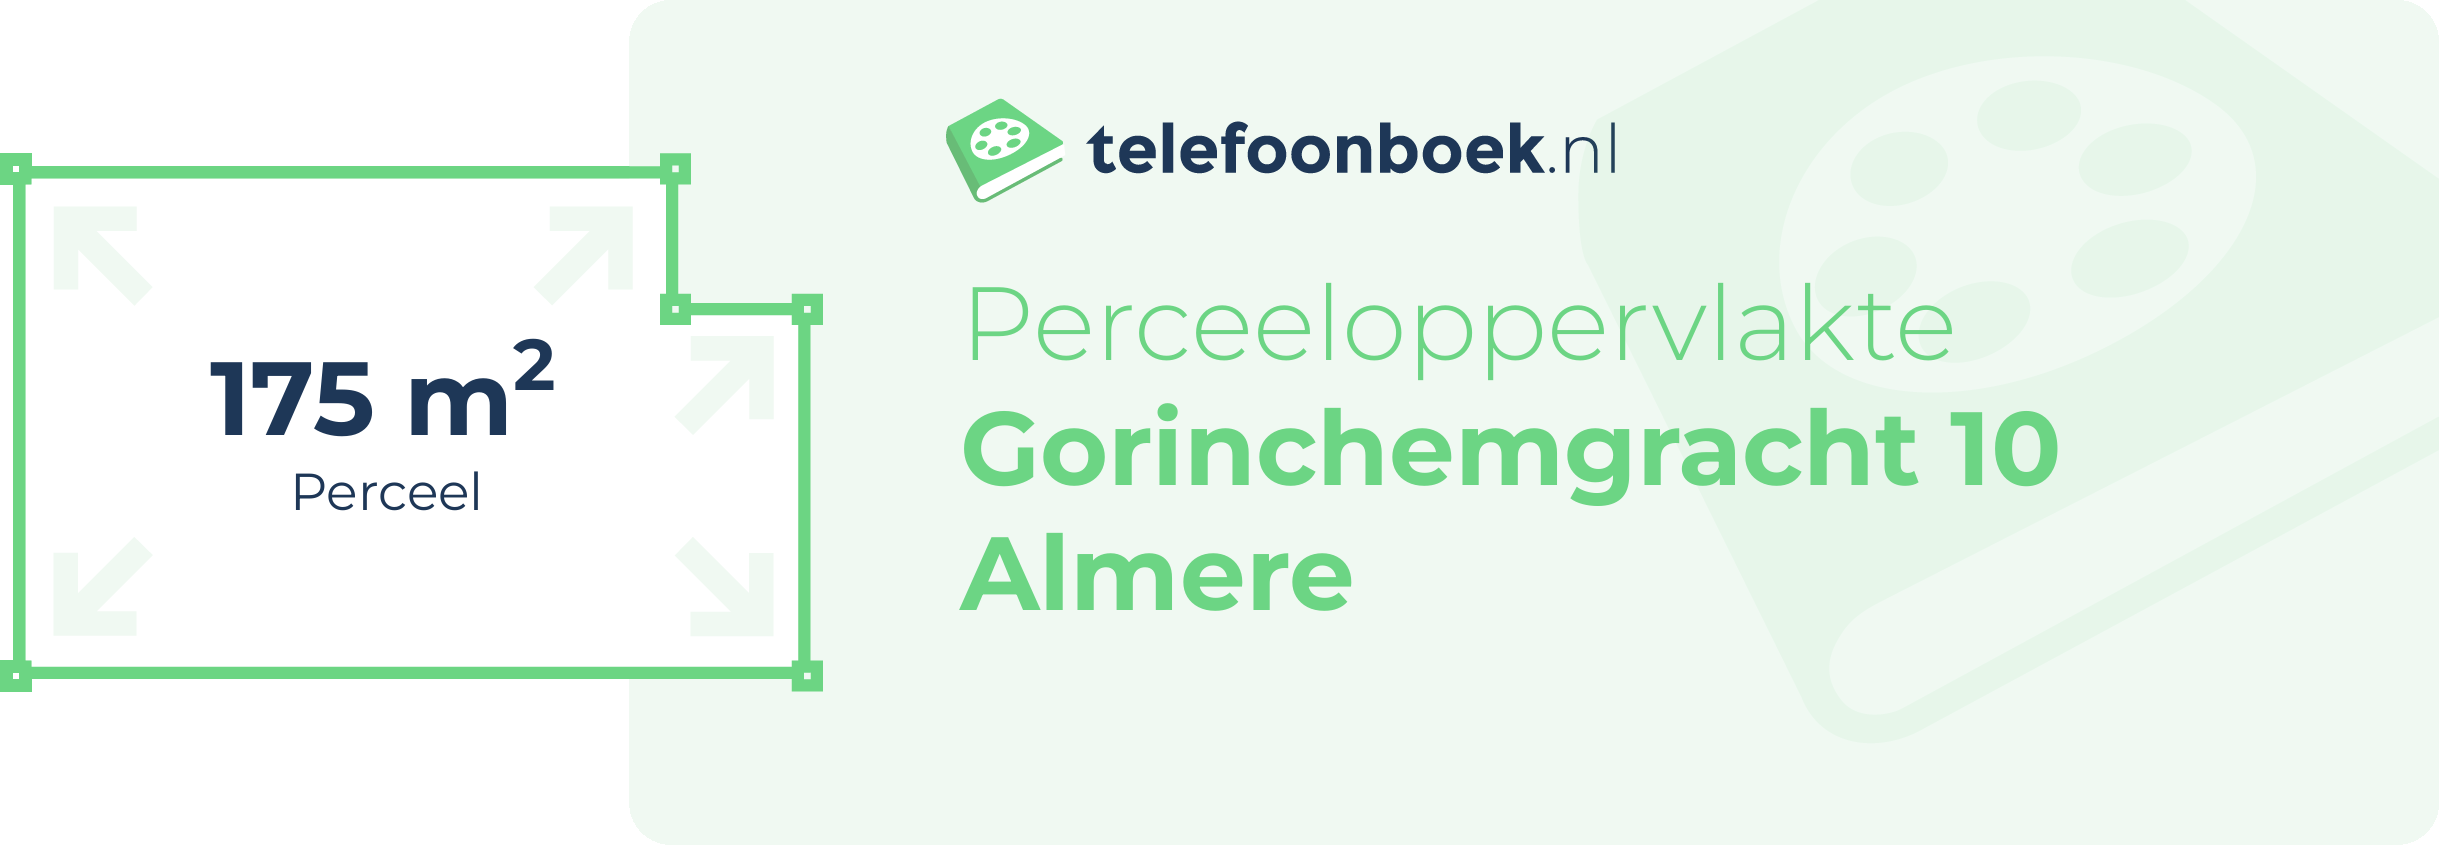 Perceeloppervlakte Gorinchemgracht 10 Almere